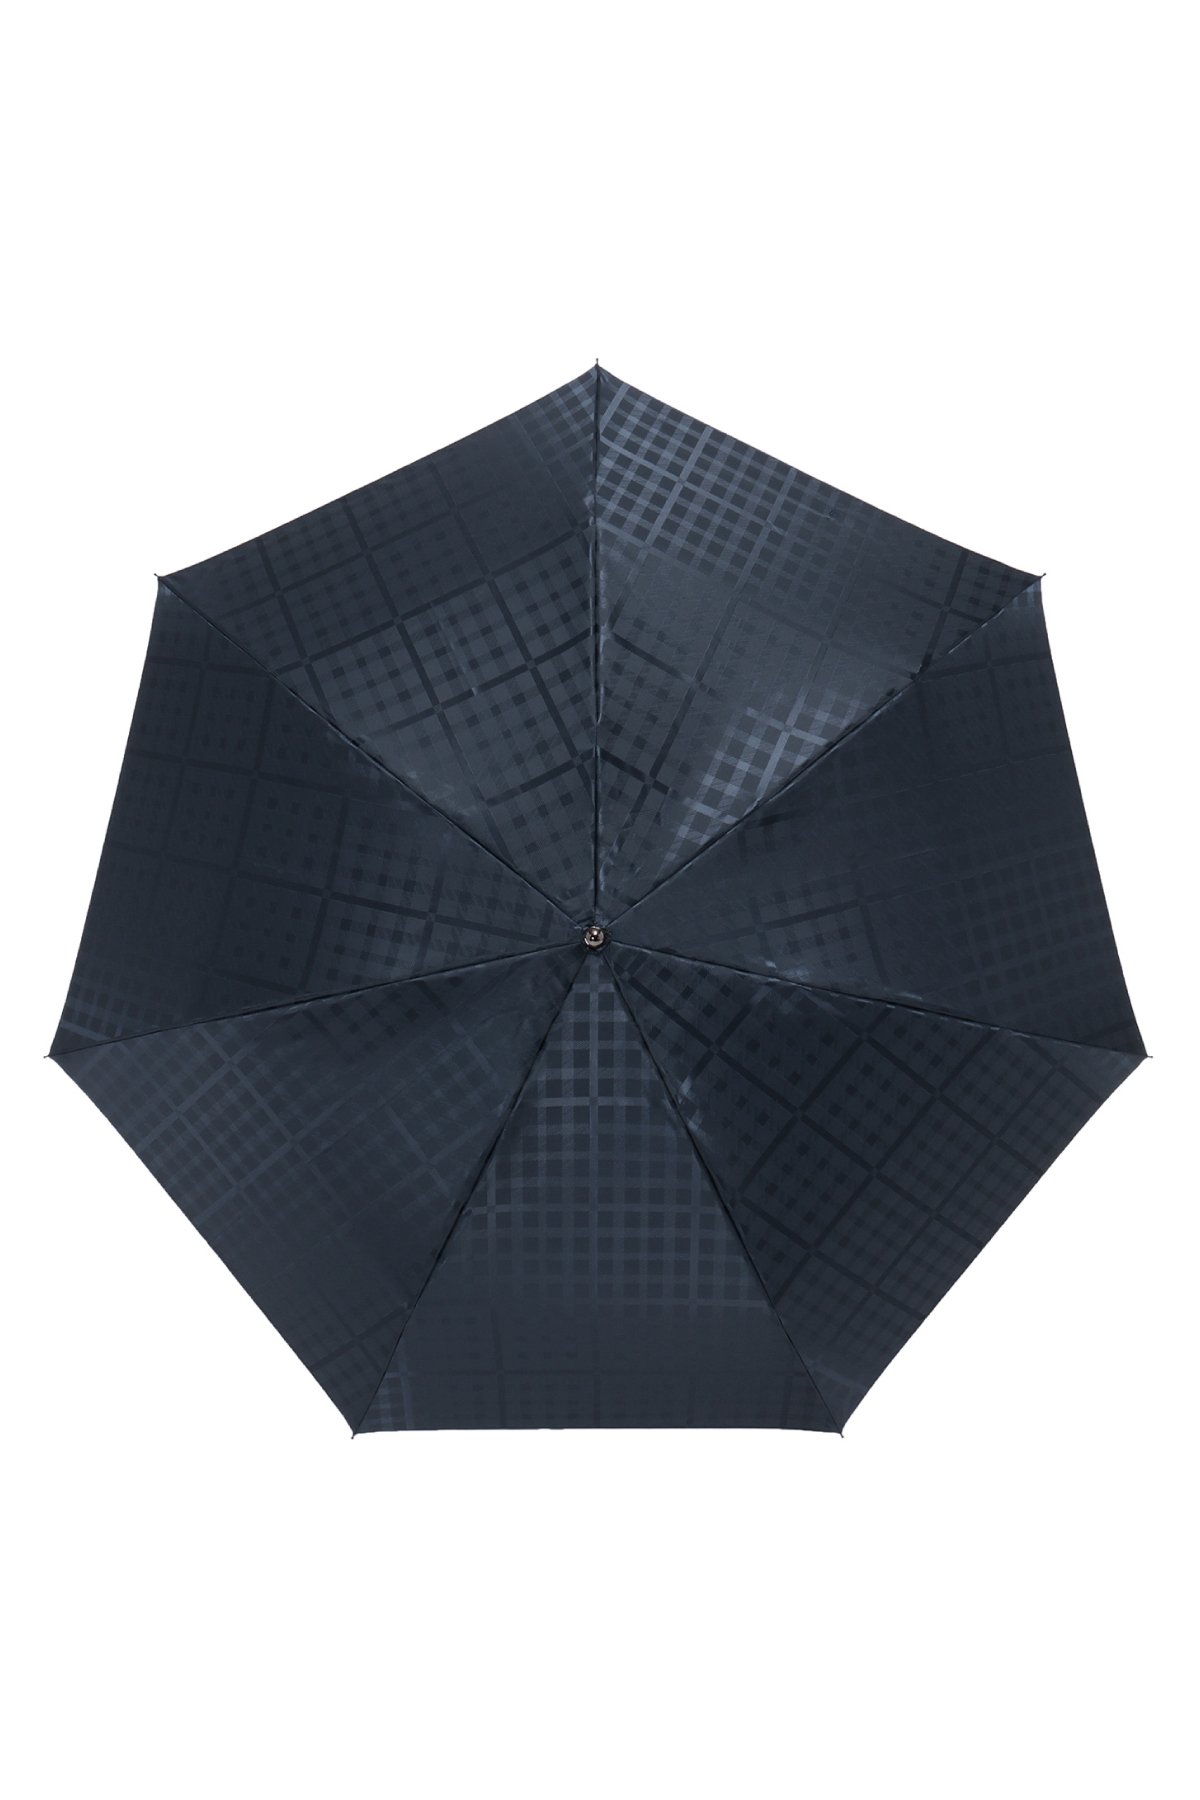 【雨傘】ミニ折りたたみ傘ジャカード 詳細画像 3